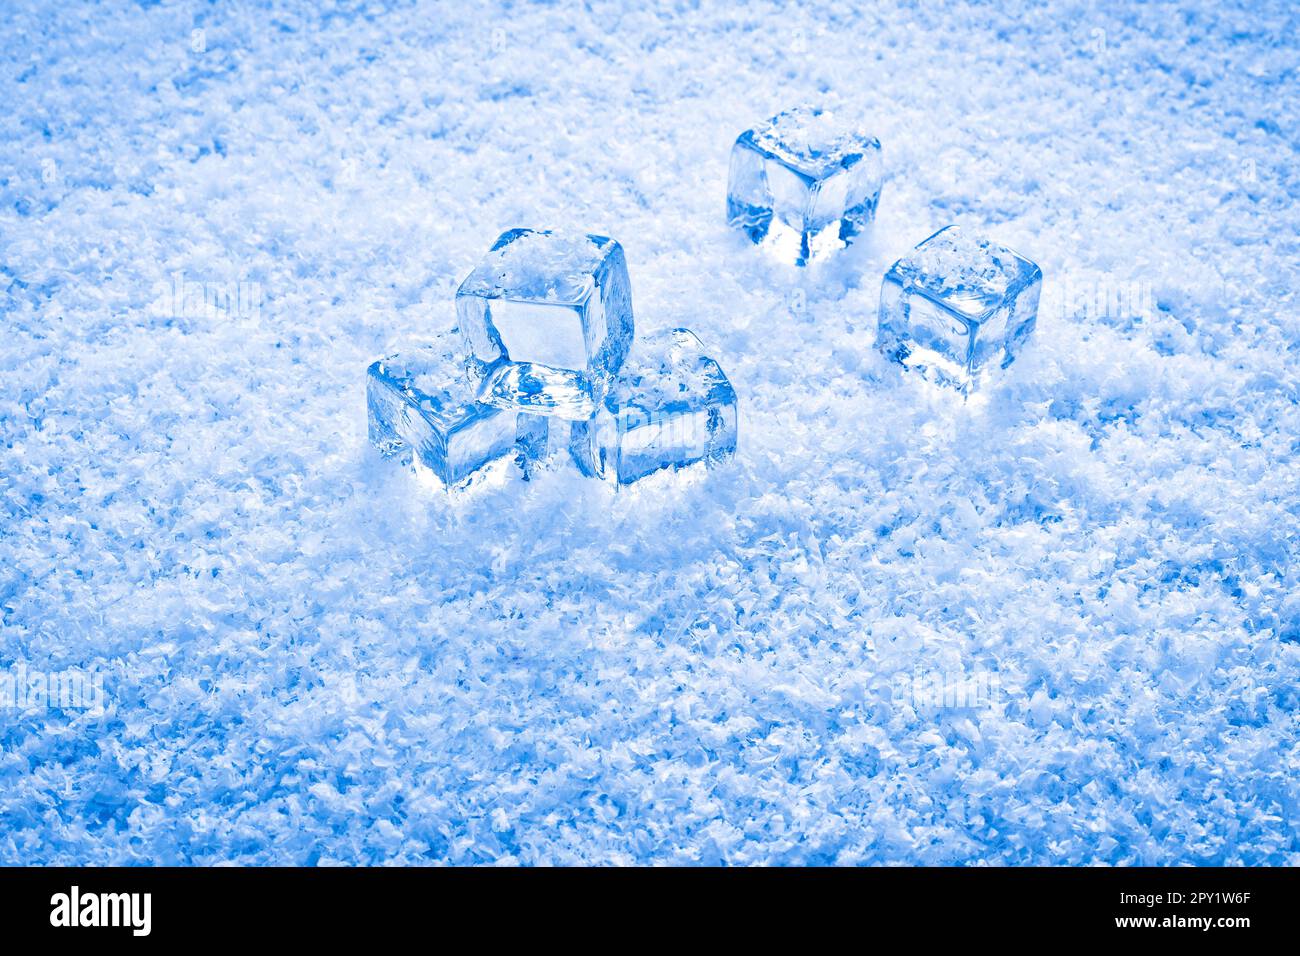 https://c8.alamy.com/comp/2PY1W6F/ice-cubes-of-fresh-snow-2PY1W6F.jpg